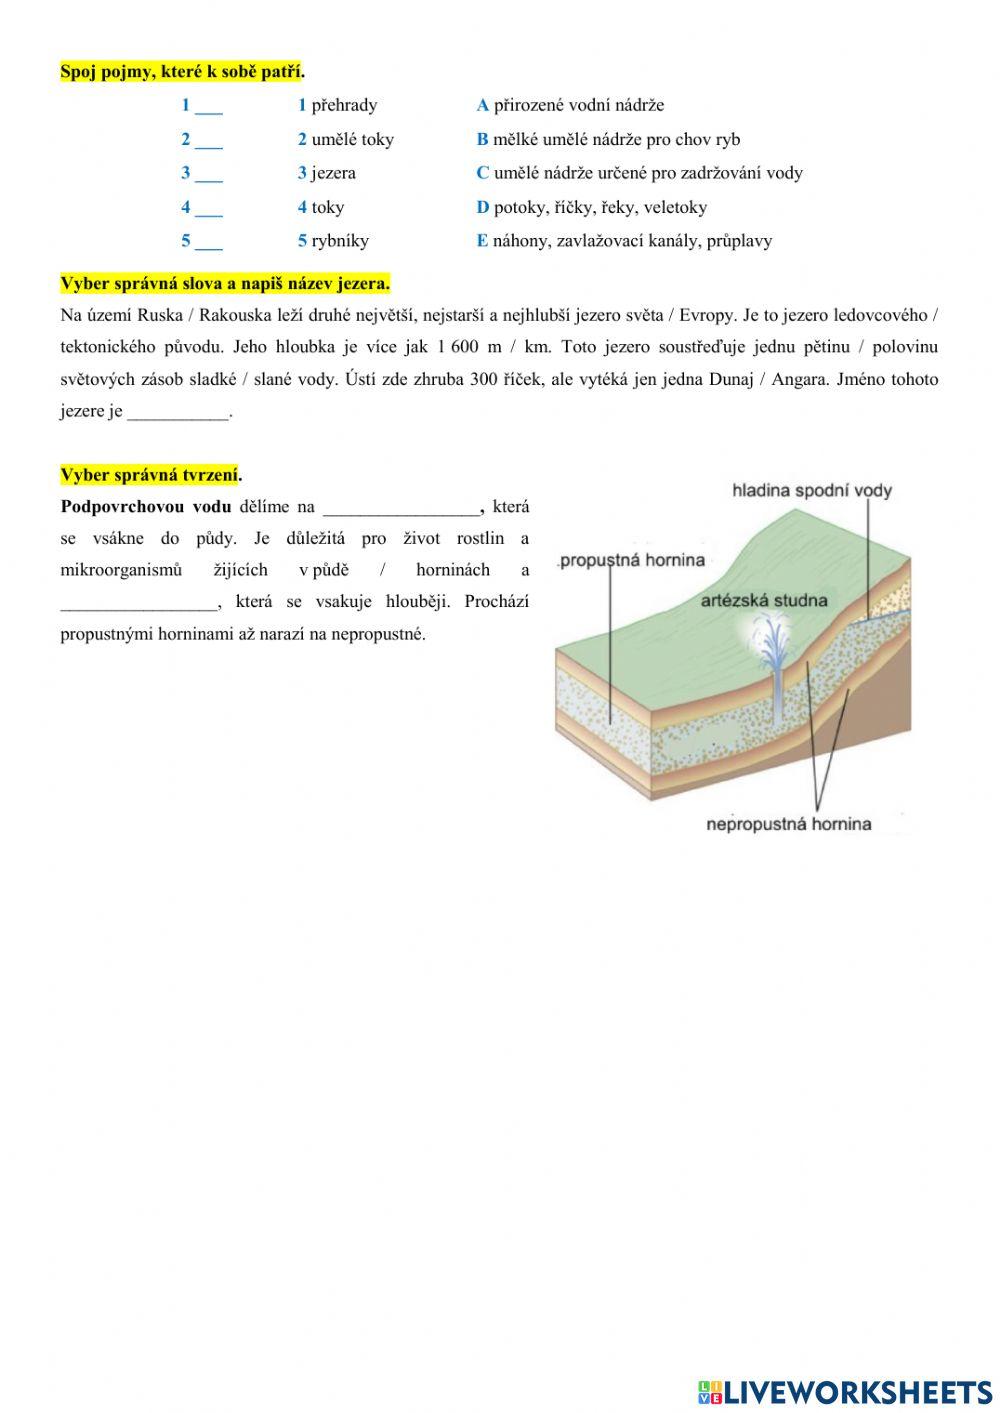 Z6 Hydrosféra - pevninská voda